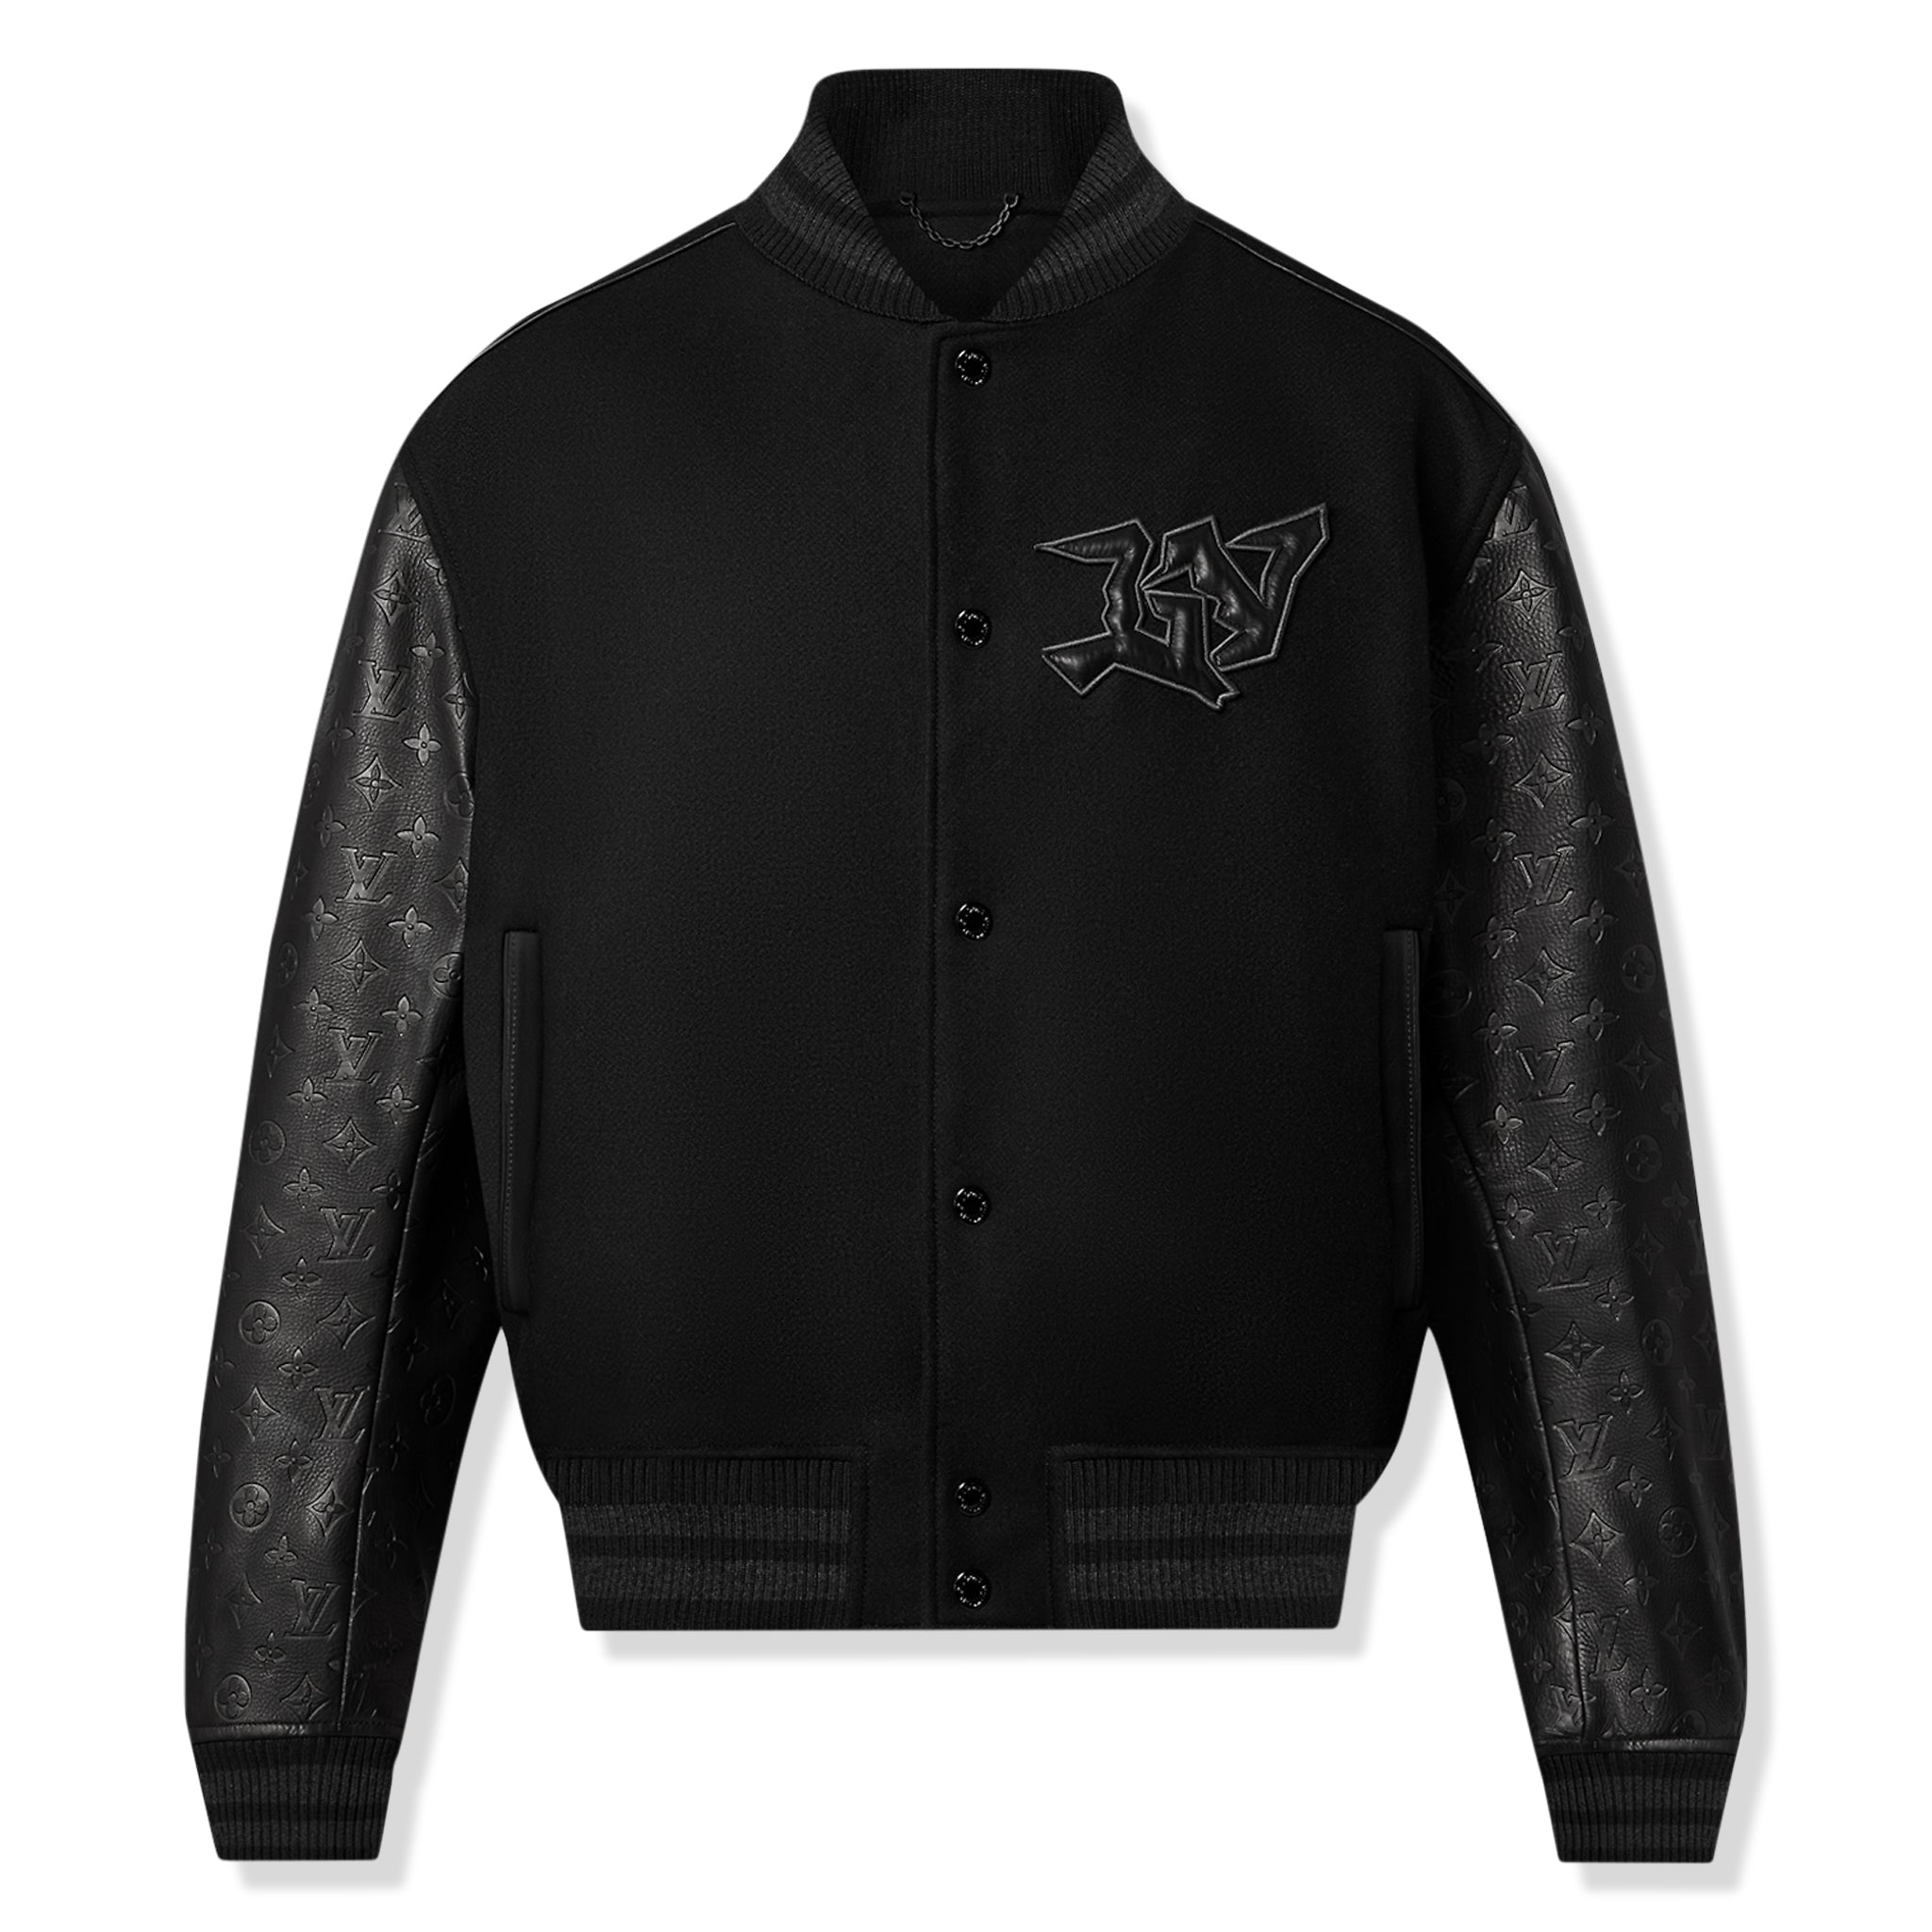 Louis Vuitton - Authenticated Jacket - Viscose Black Plain for Men, Never Worn